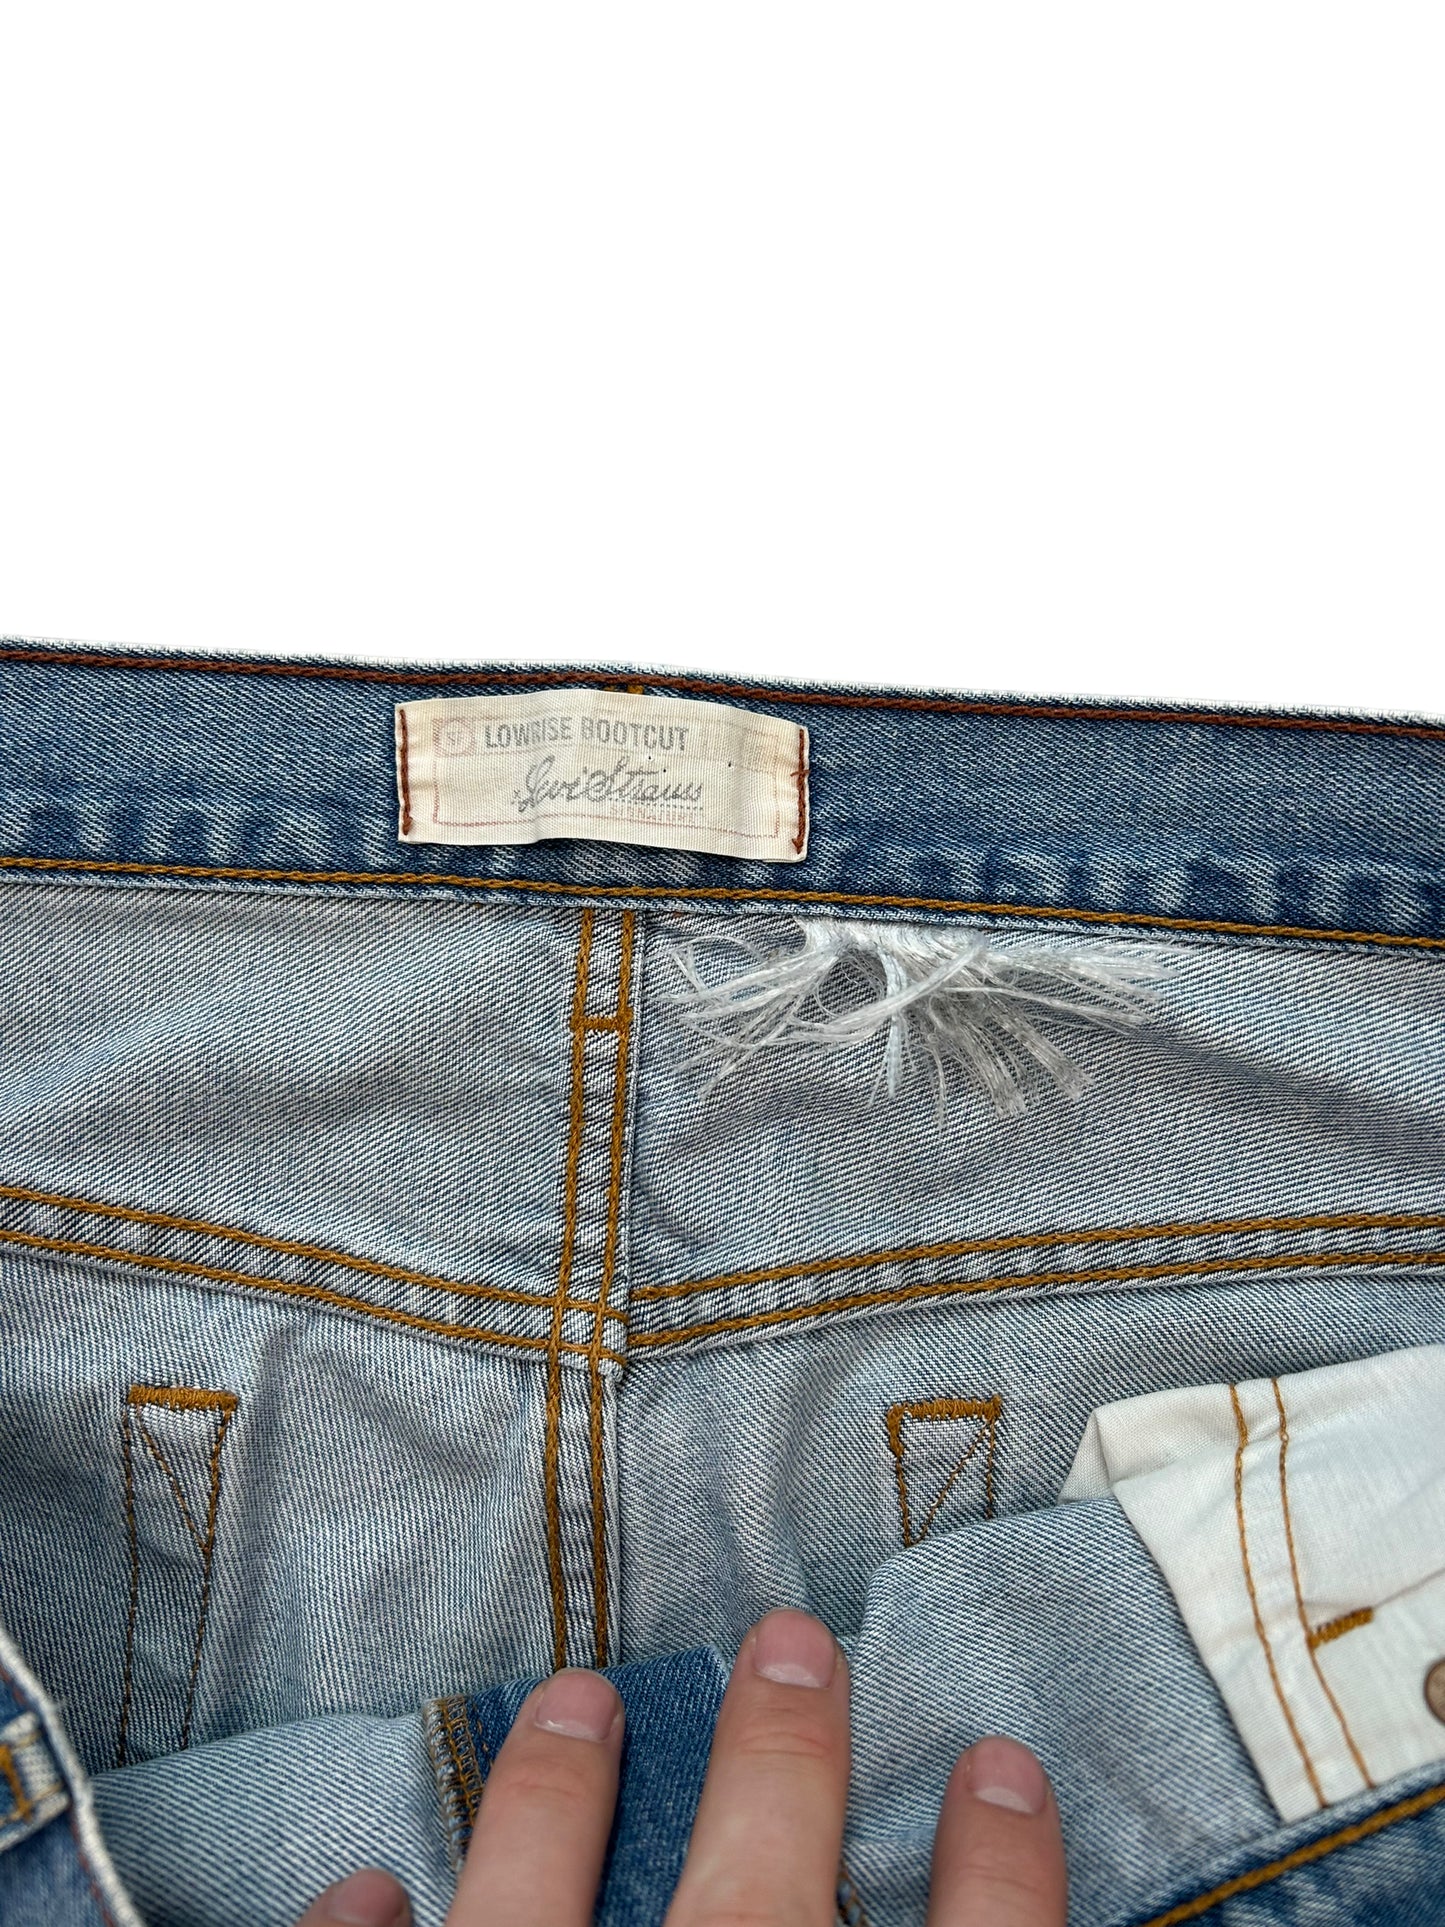 Vintage Levis Bootcut Denim Jeans